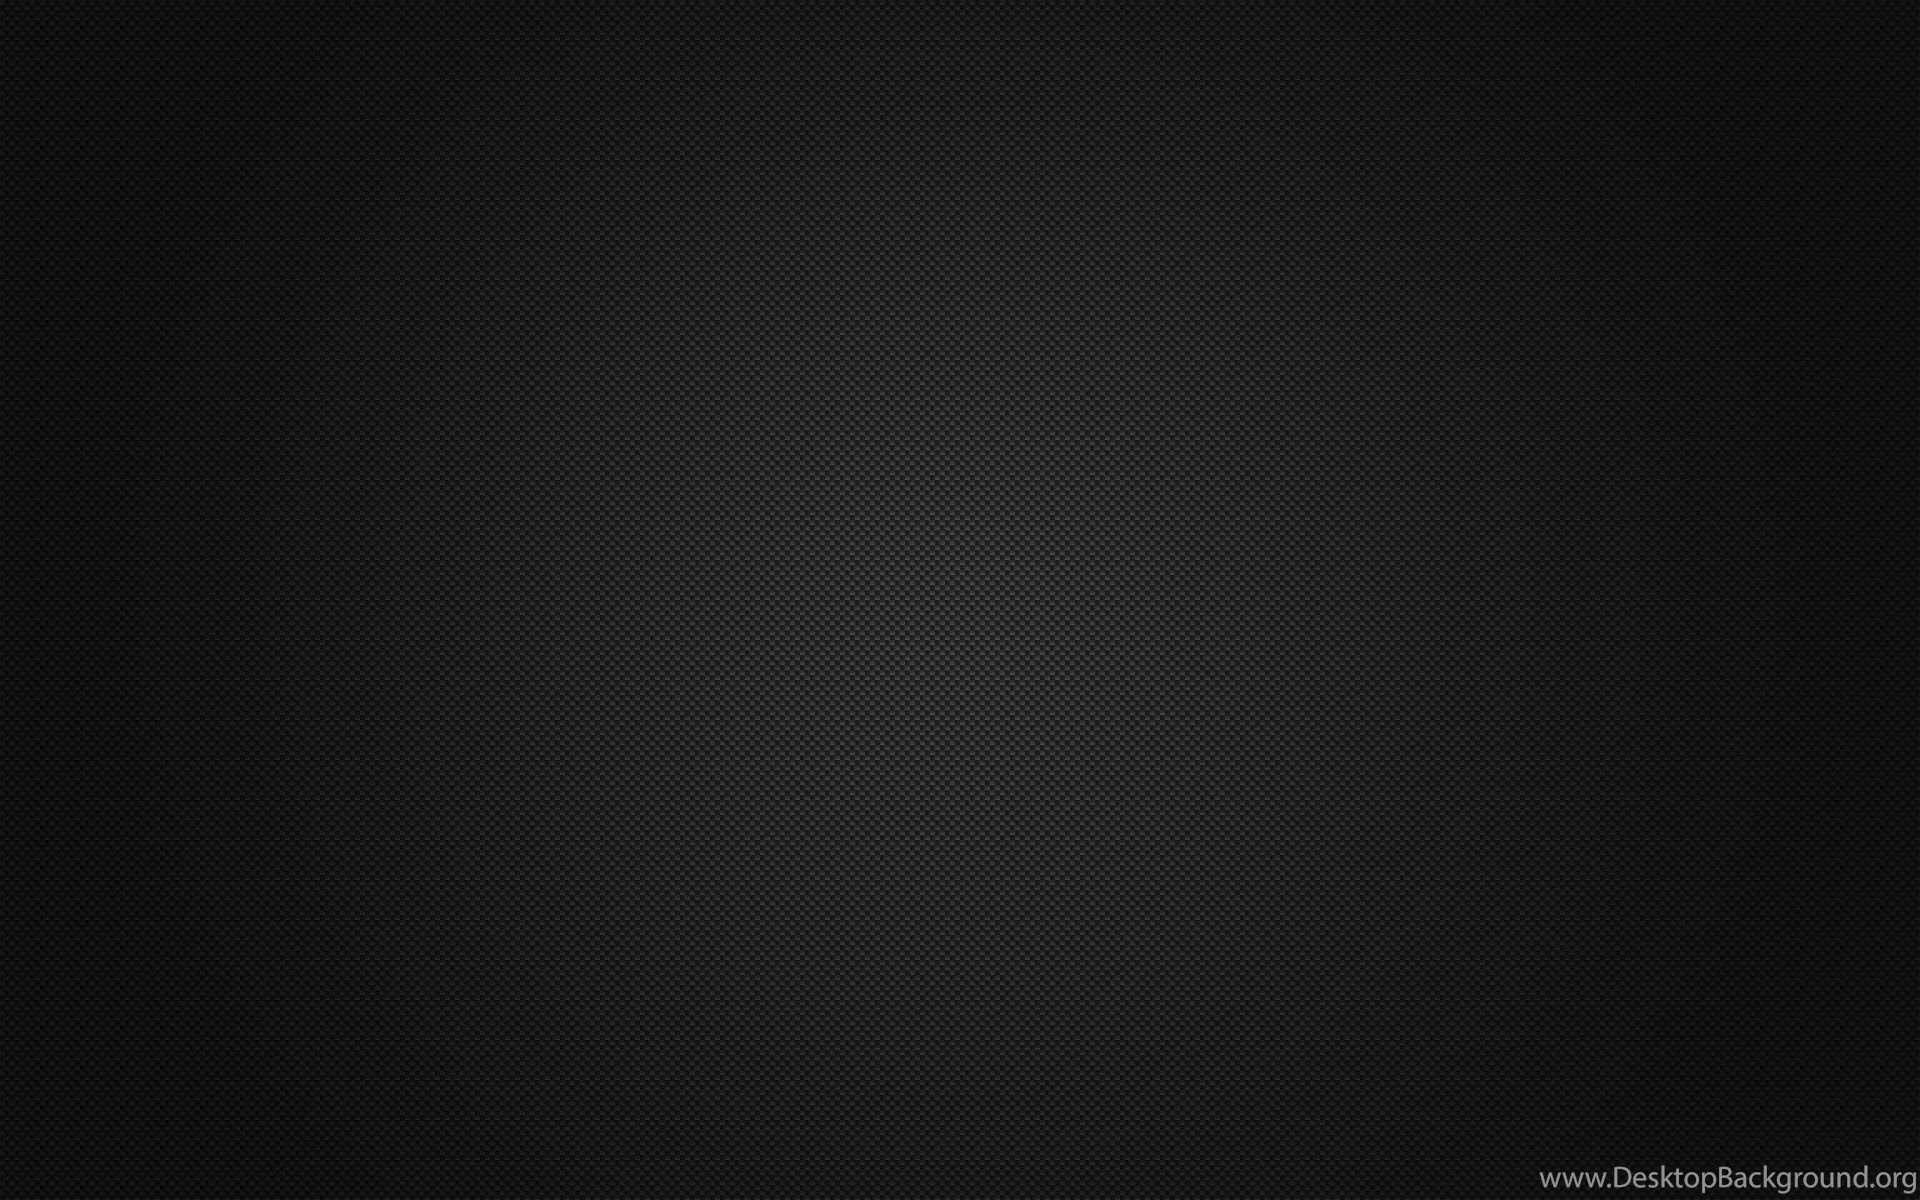 Top Clean Black Background Wallpaper Image For Desktop Background